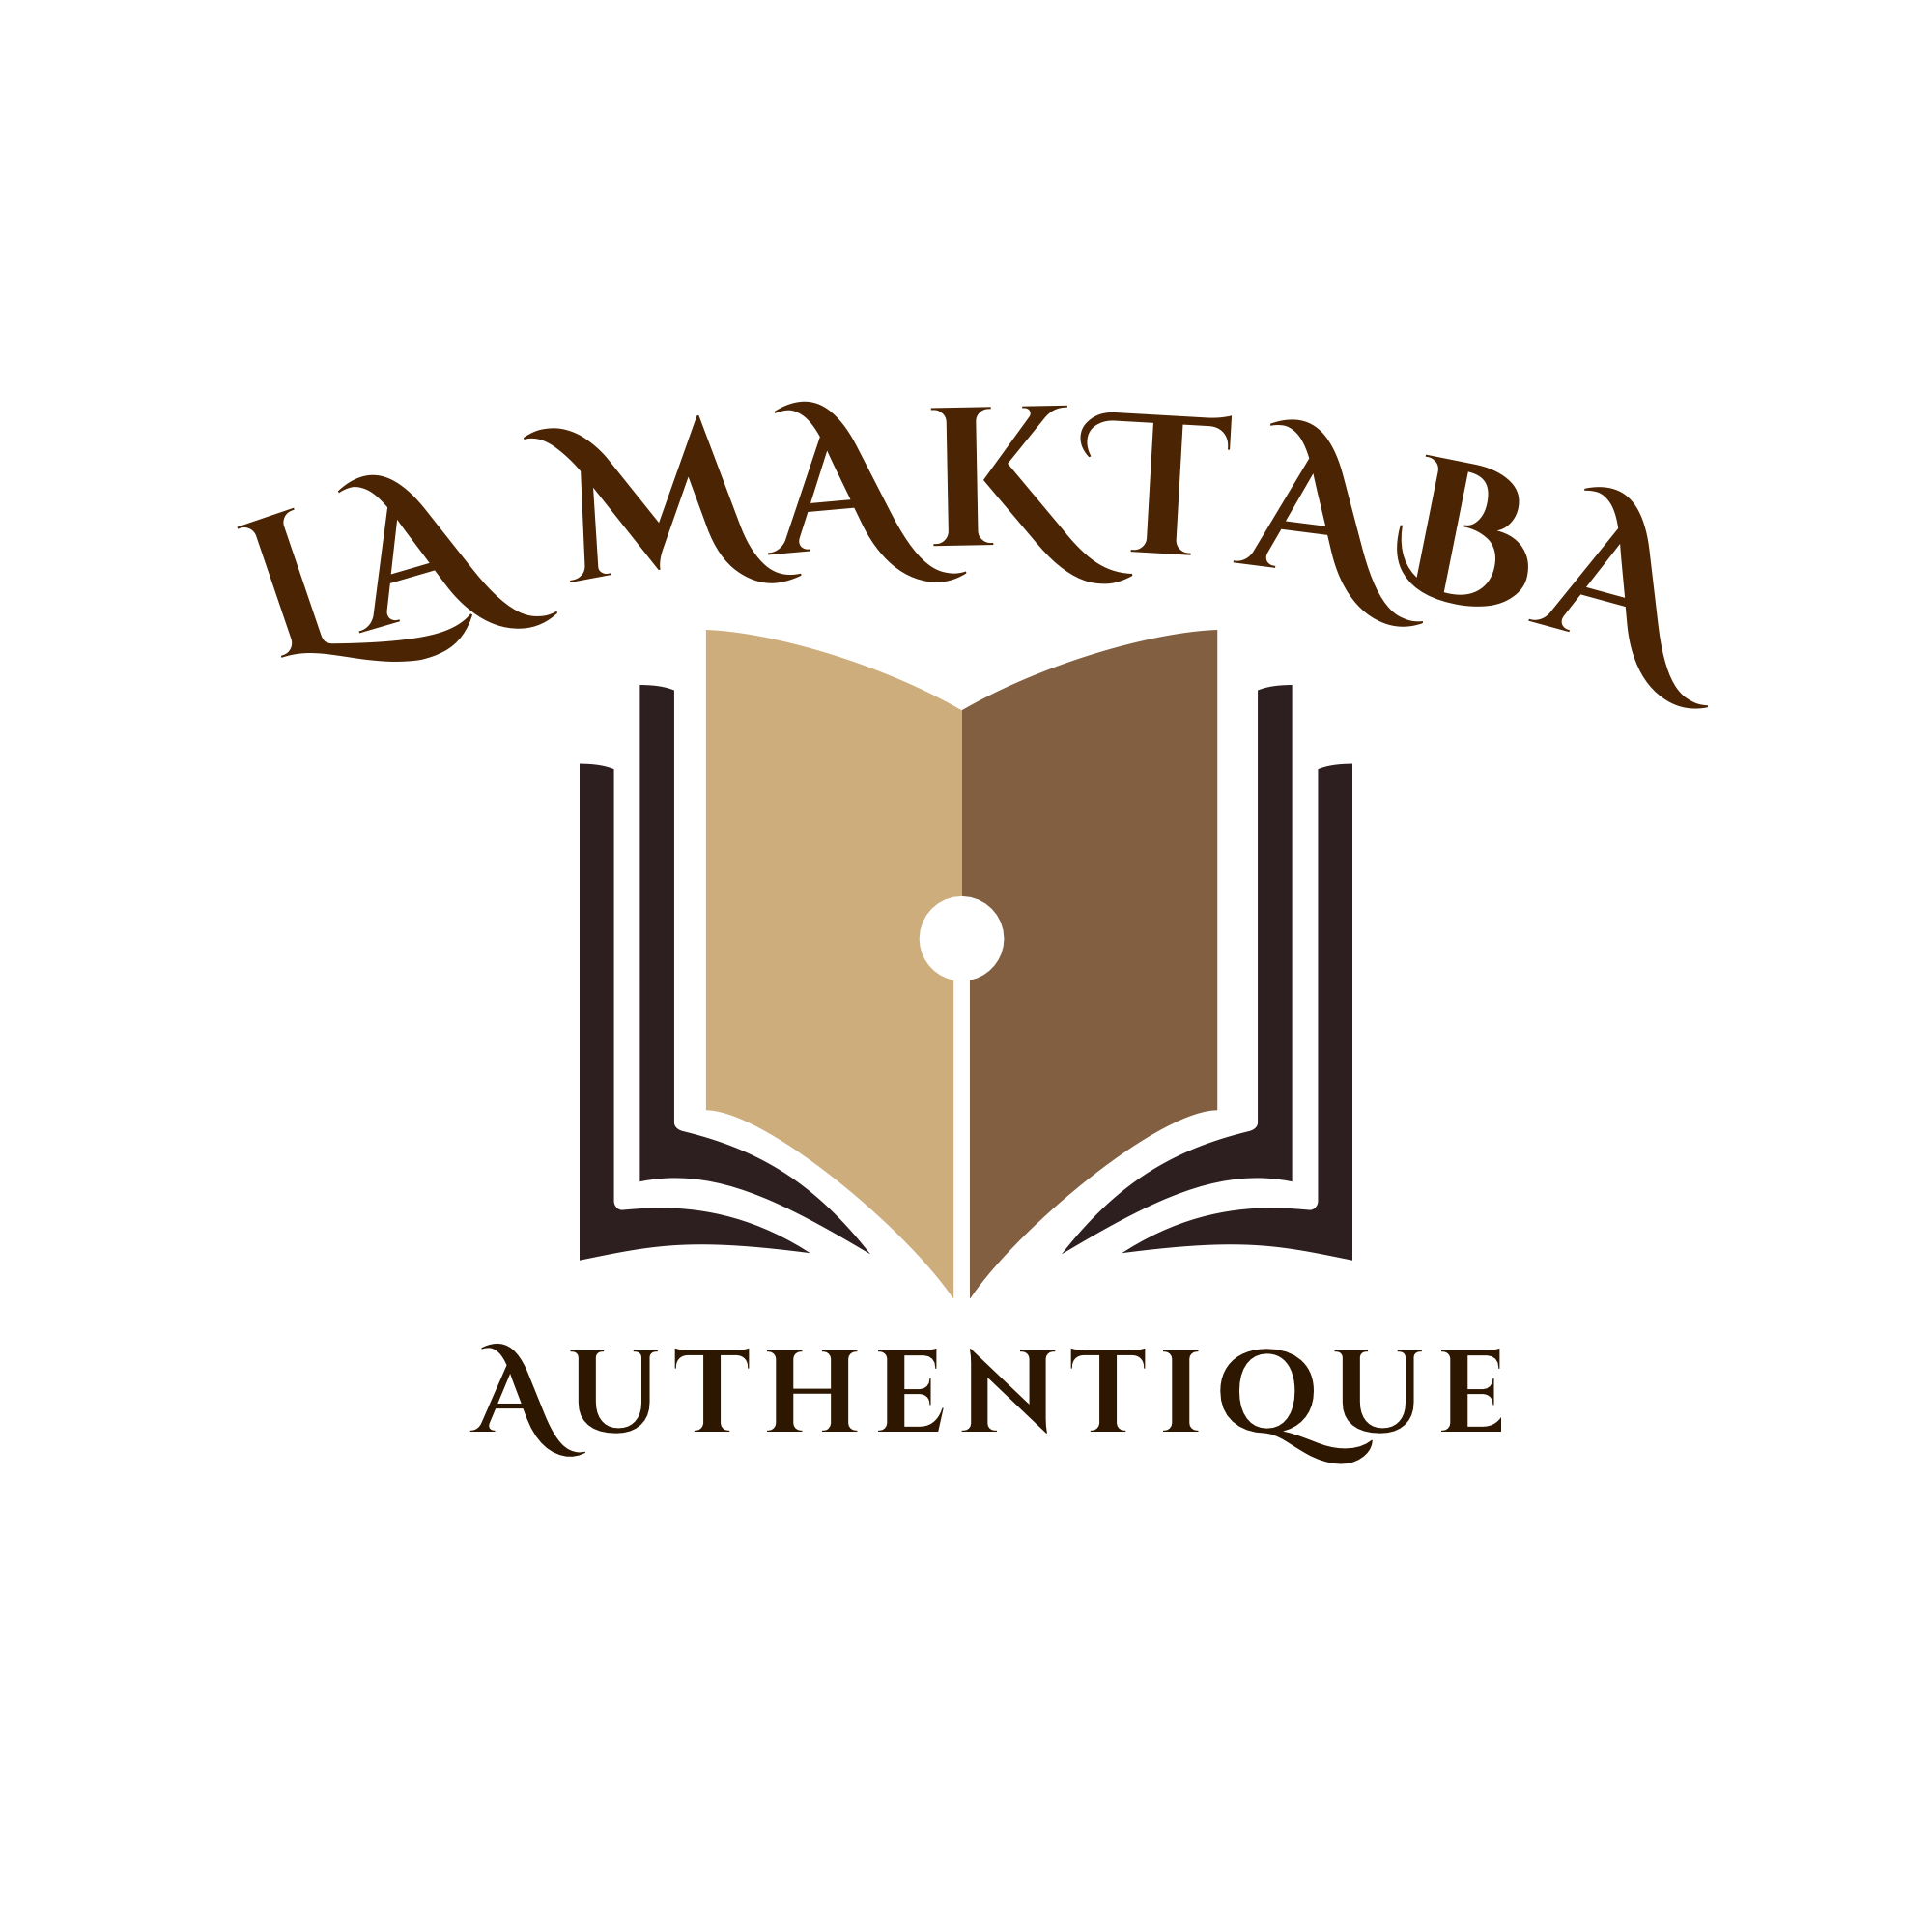 la Maktaba authentique